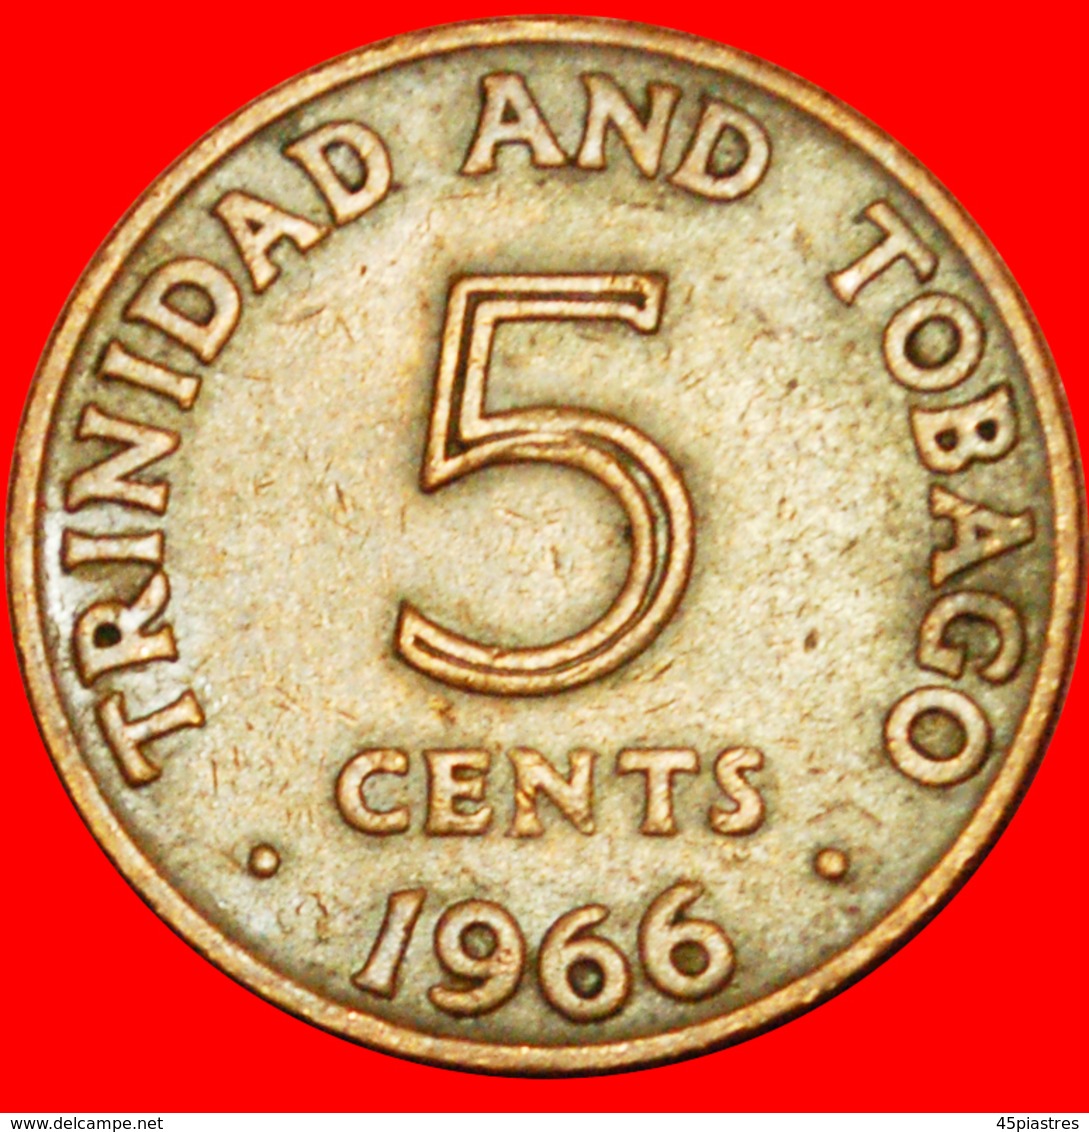 # GREAT BRITAIN (1966-1972): TRINIDAD AND TOBAGO ★ 5 CENTS 1966! LOW START ★ NO RESERVE! - Trinidad Y Tobago